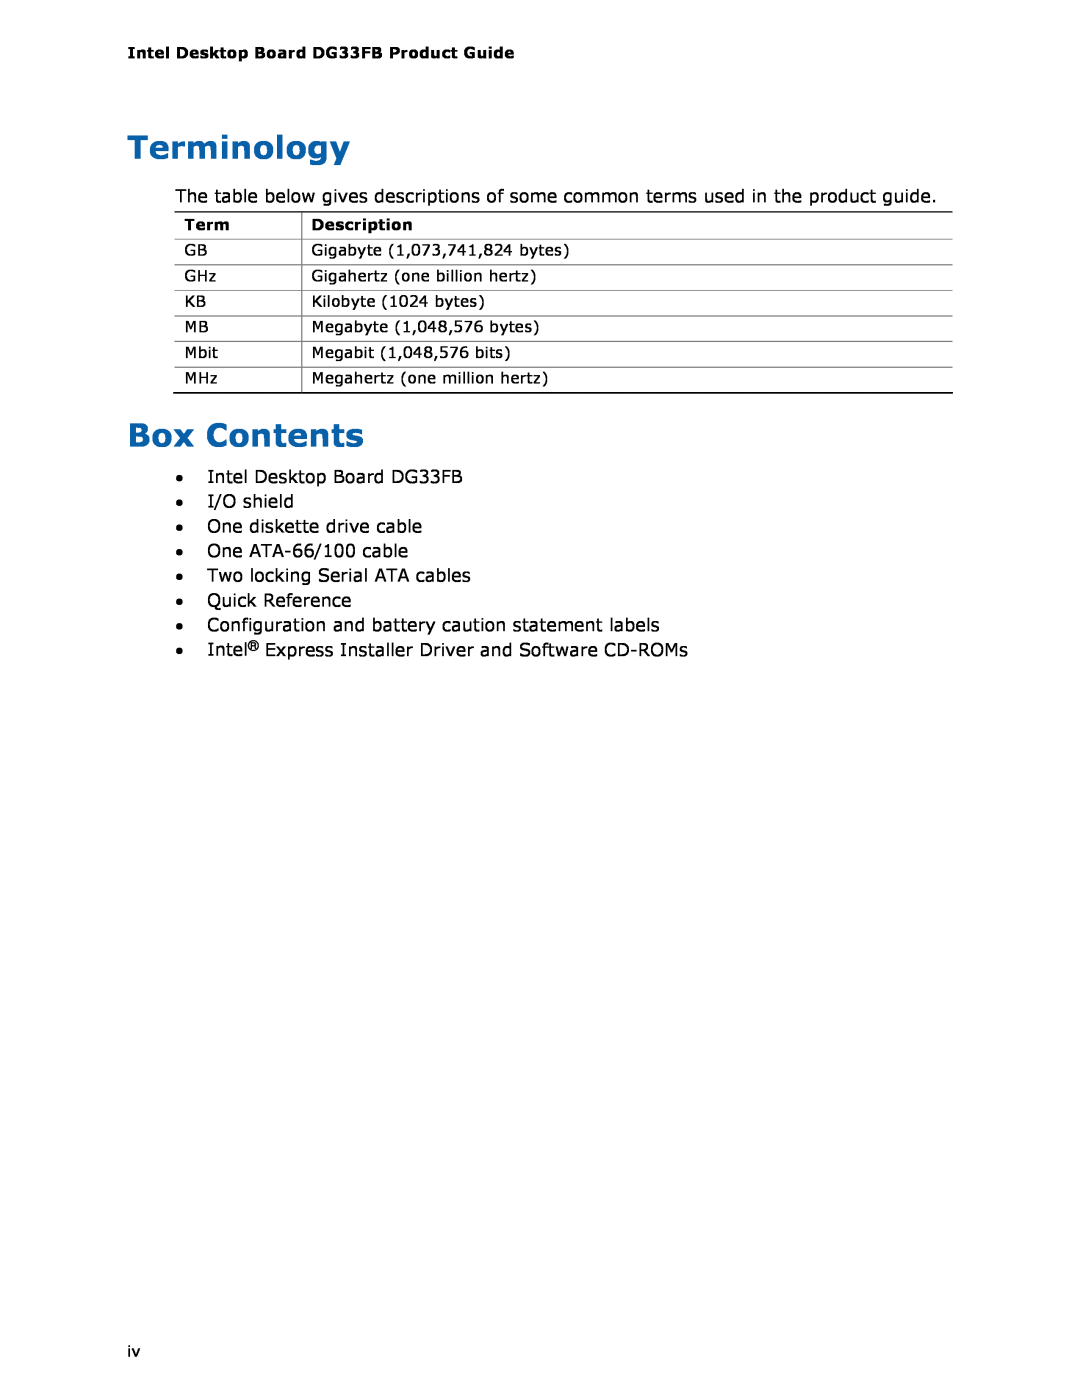 Intel DG33FB manual Terminology, Box Contents 